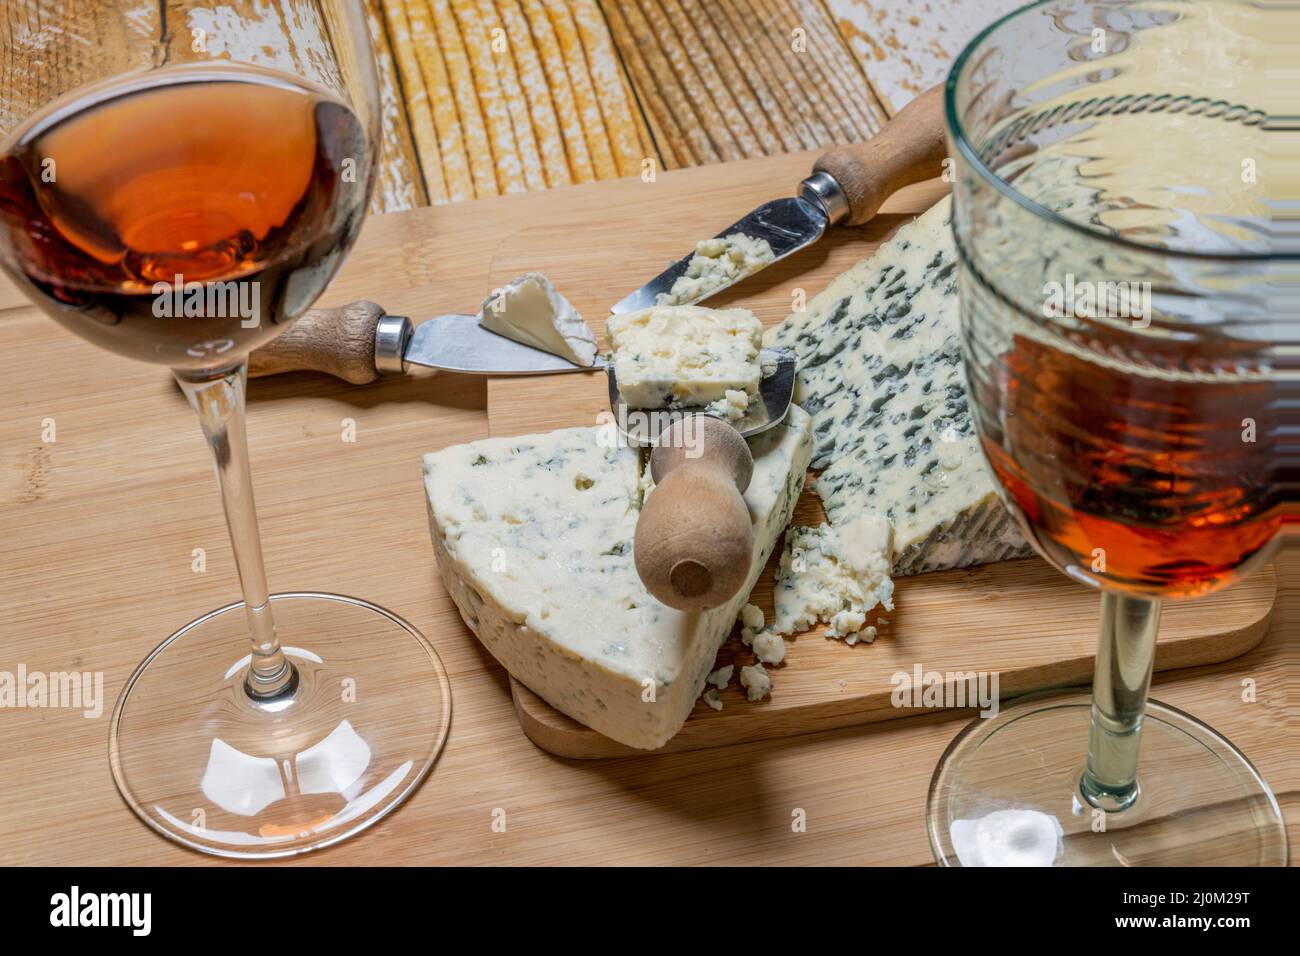 Fromages bleus tranchés et tranchés avec couteaux à fromage et verres de vin de Claret espagnol Banque D'Images